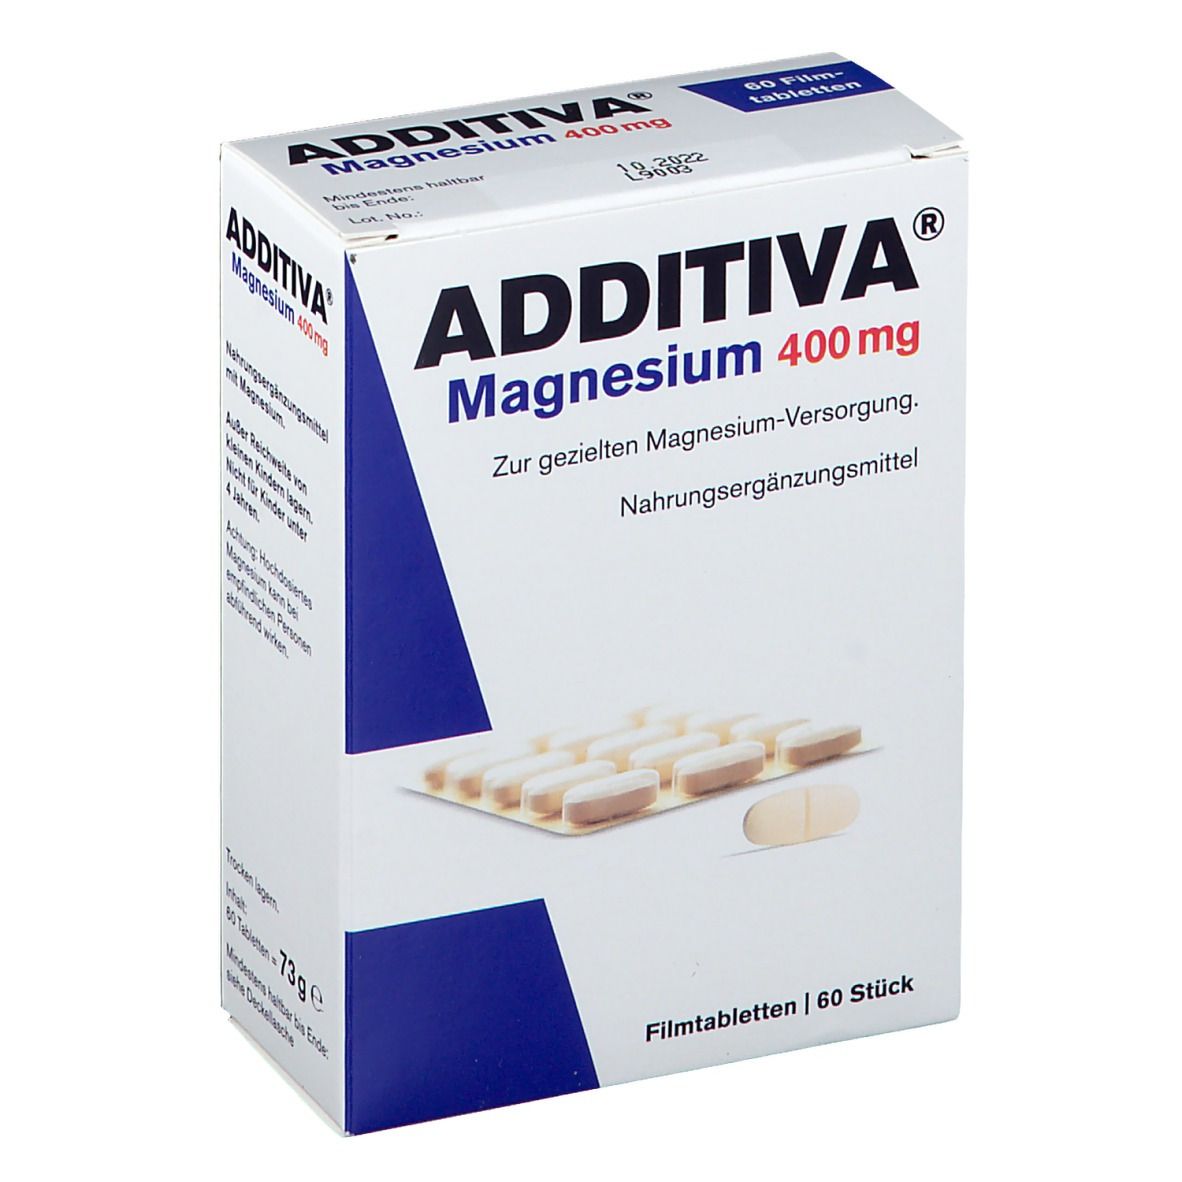 ADDITIVA® Magnesium 400 mg